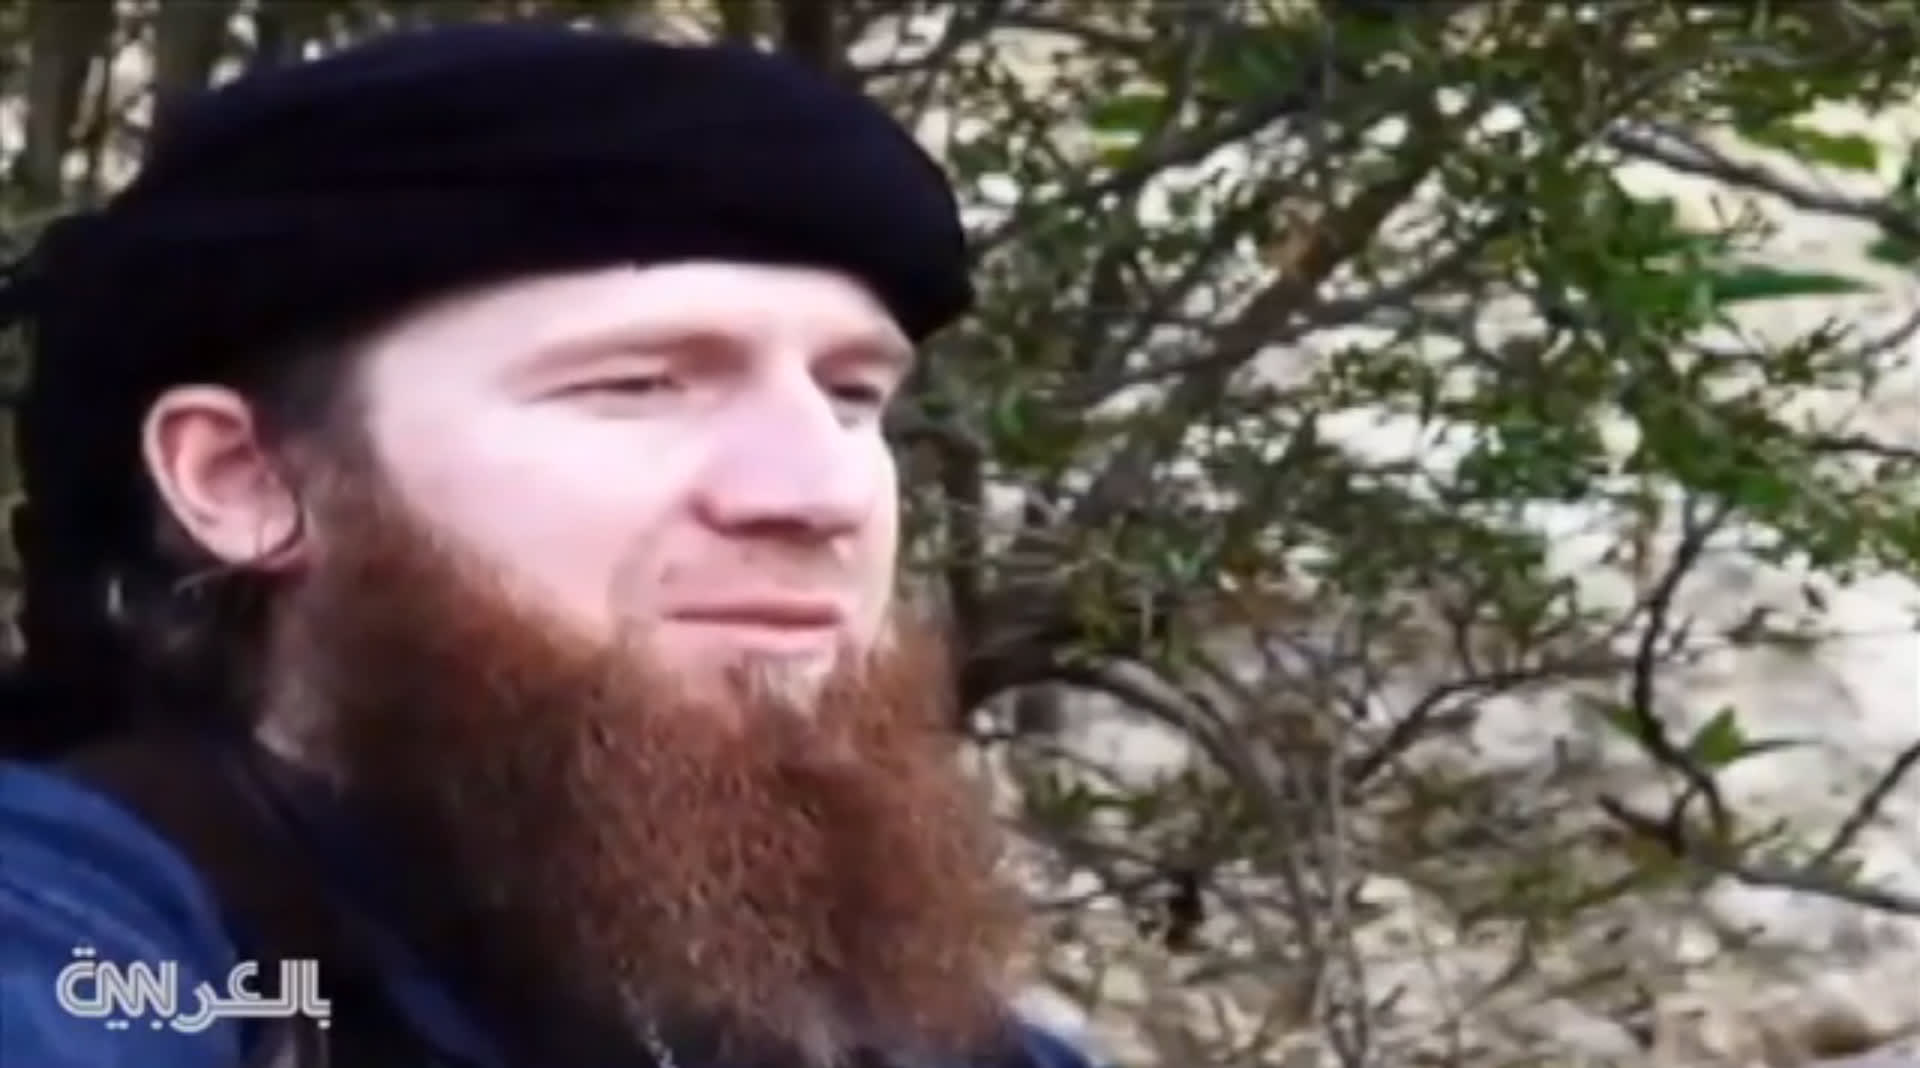 وكالة "أعماق" ذراع "داعش" الإعلامية تزعم مقتل أبو عمر الشيشاني في معارك قرب الموصل